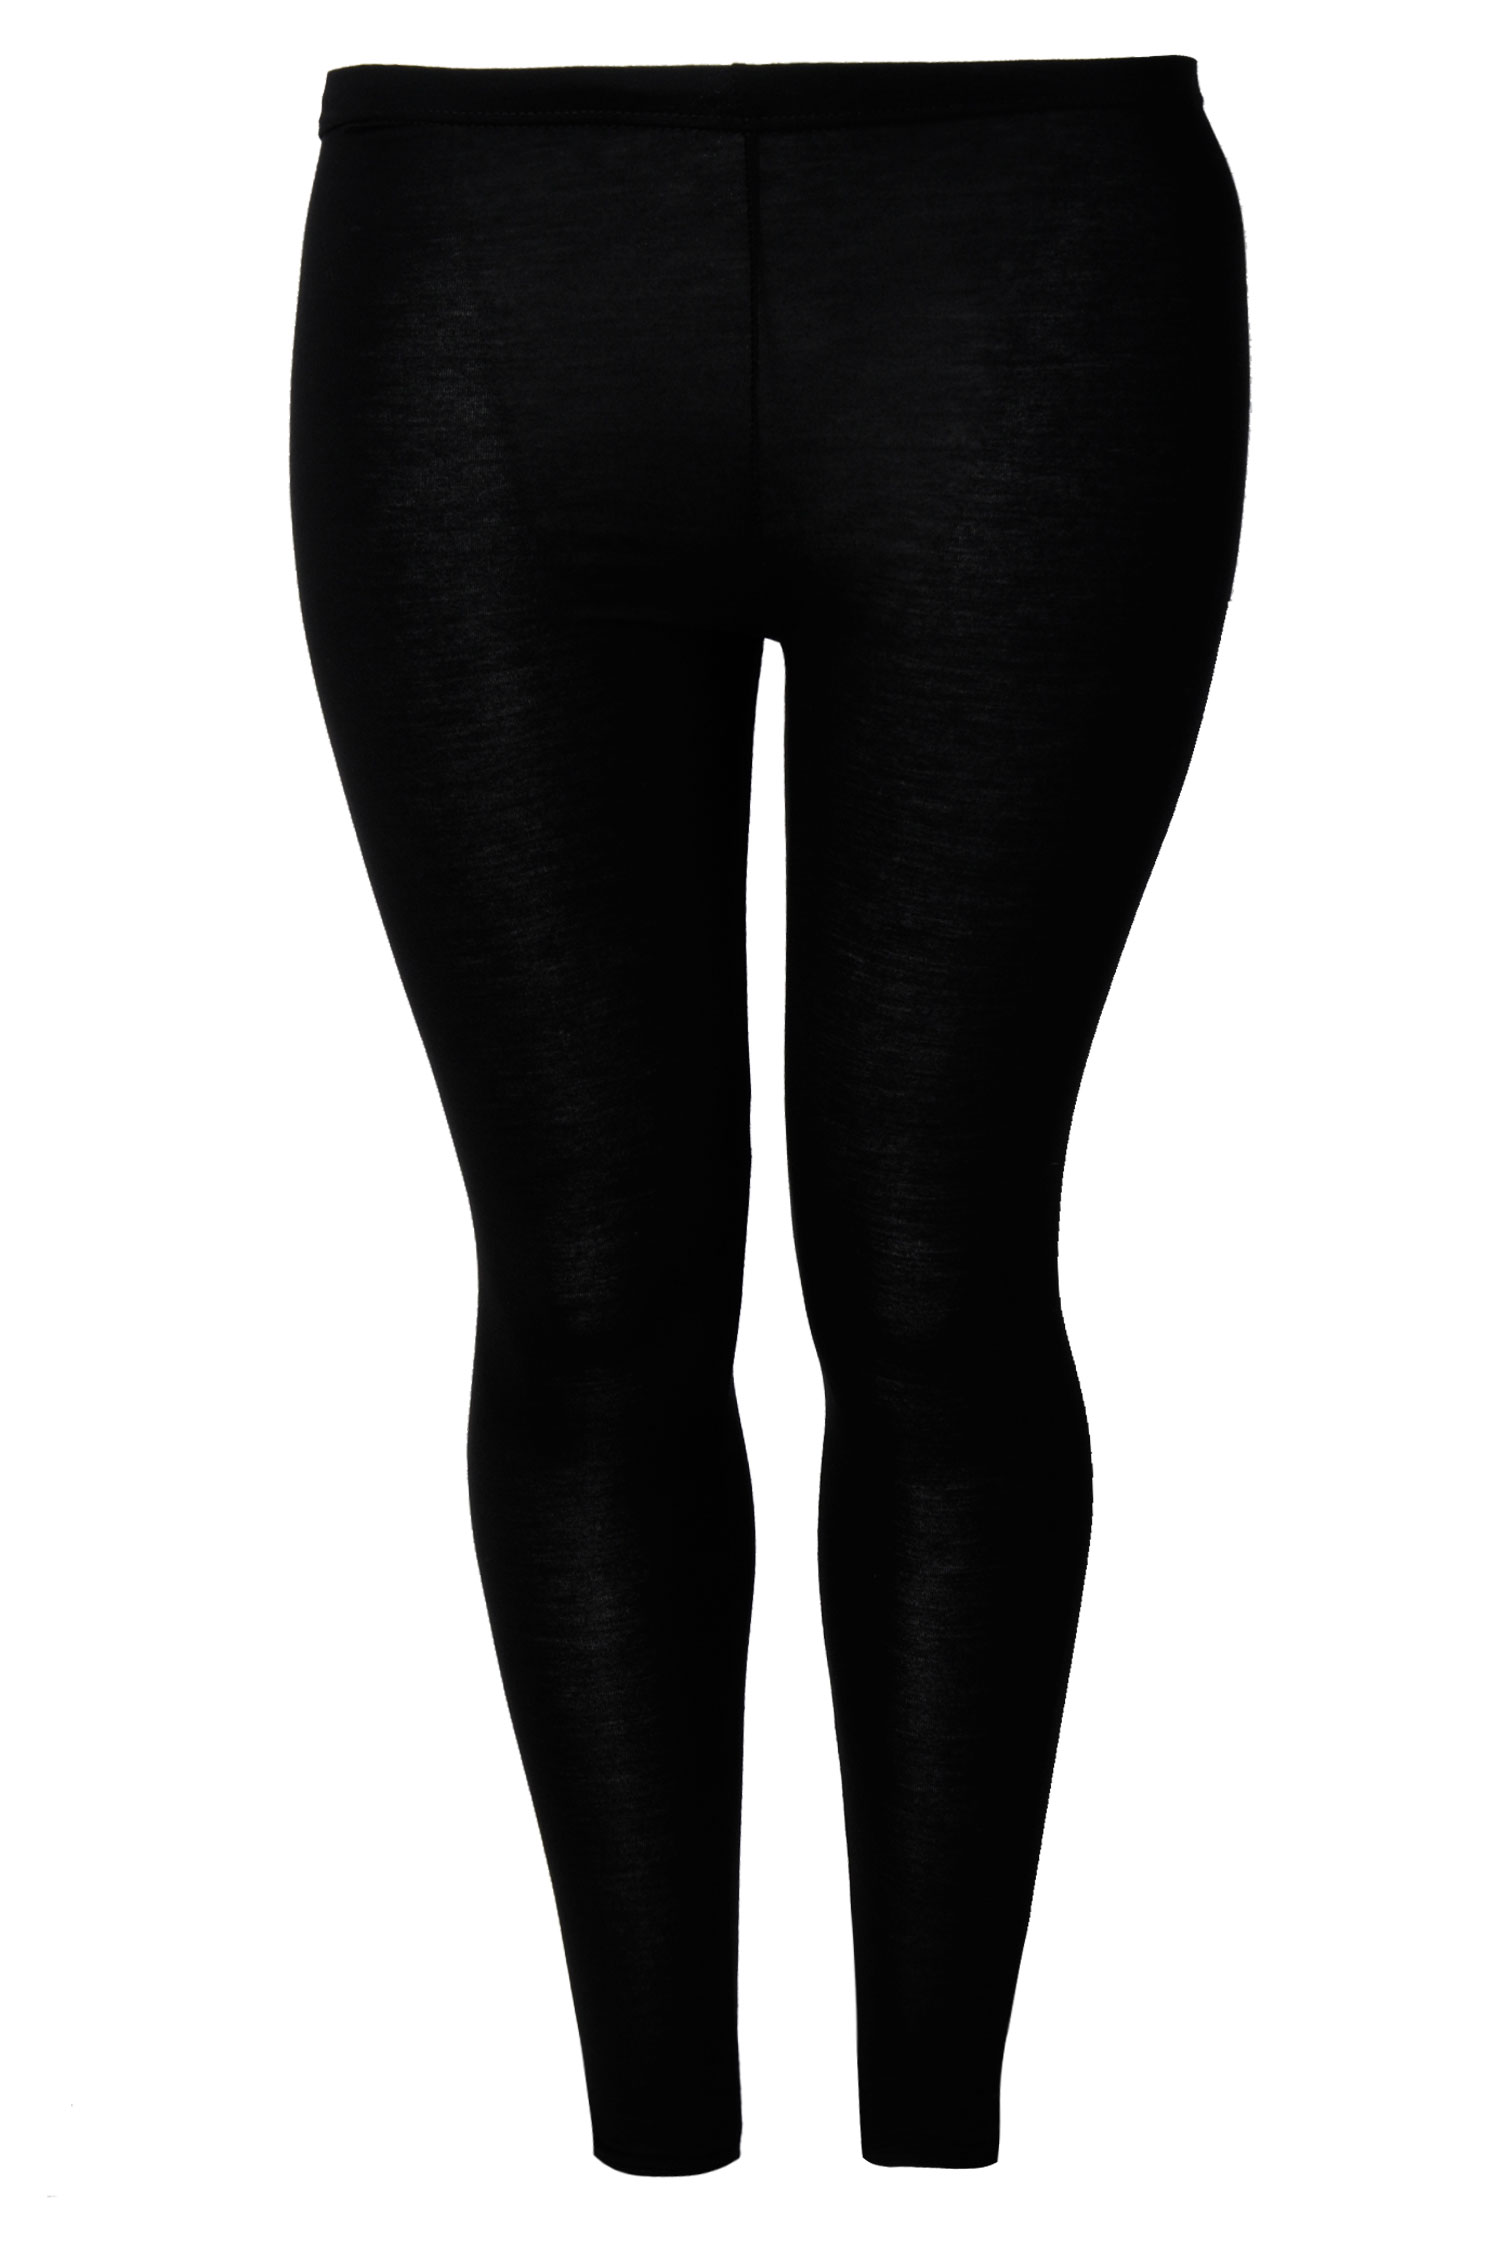 Black cotton leggings full length